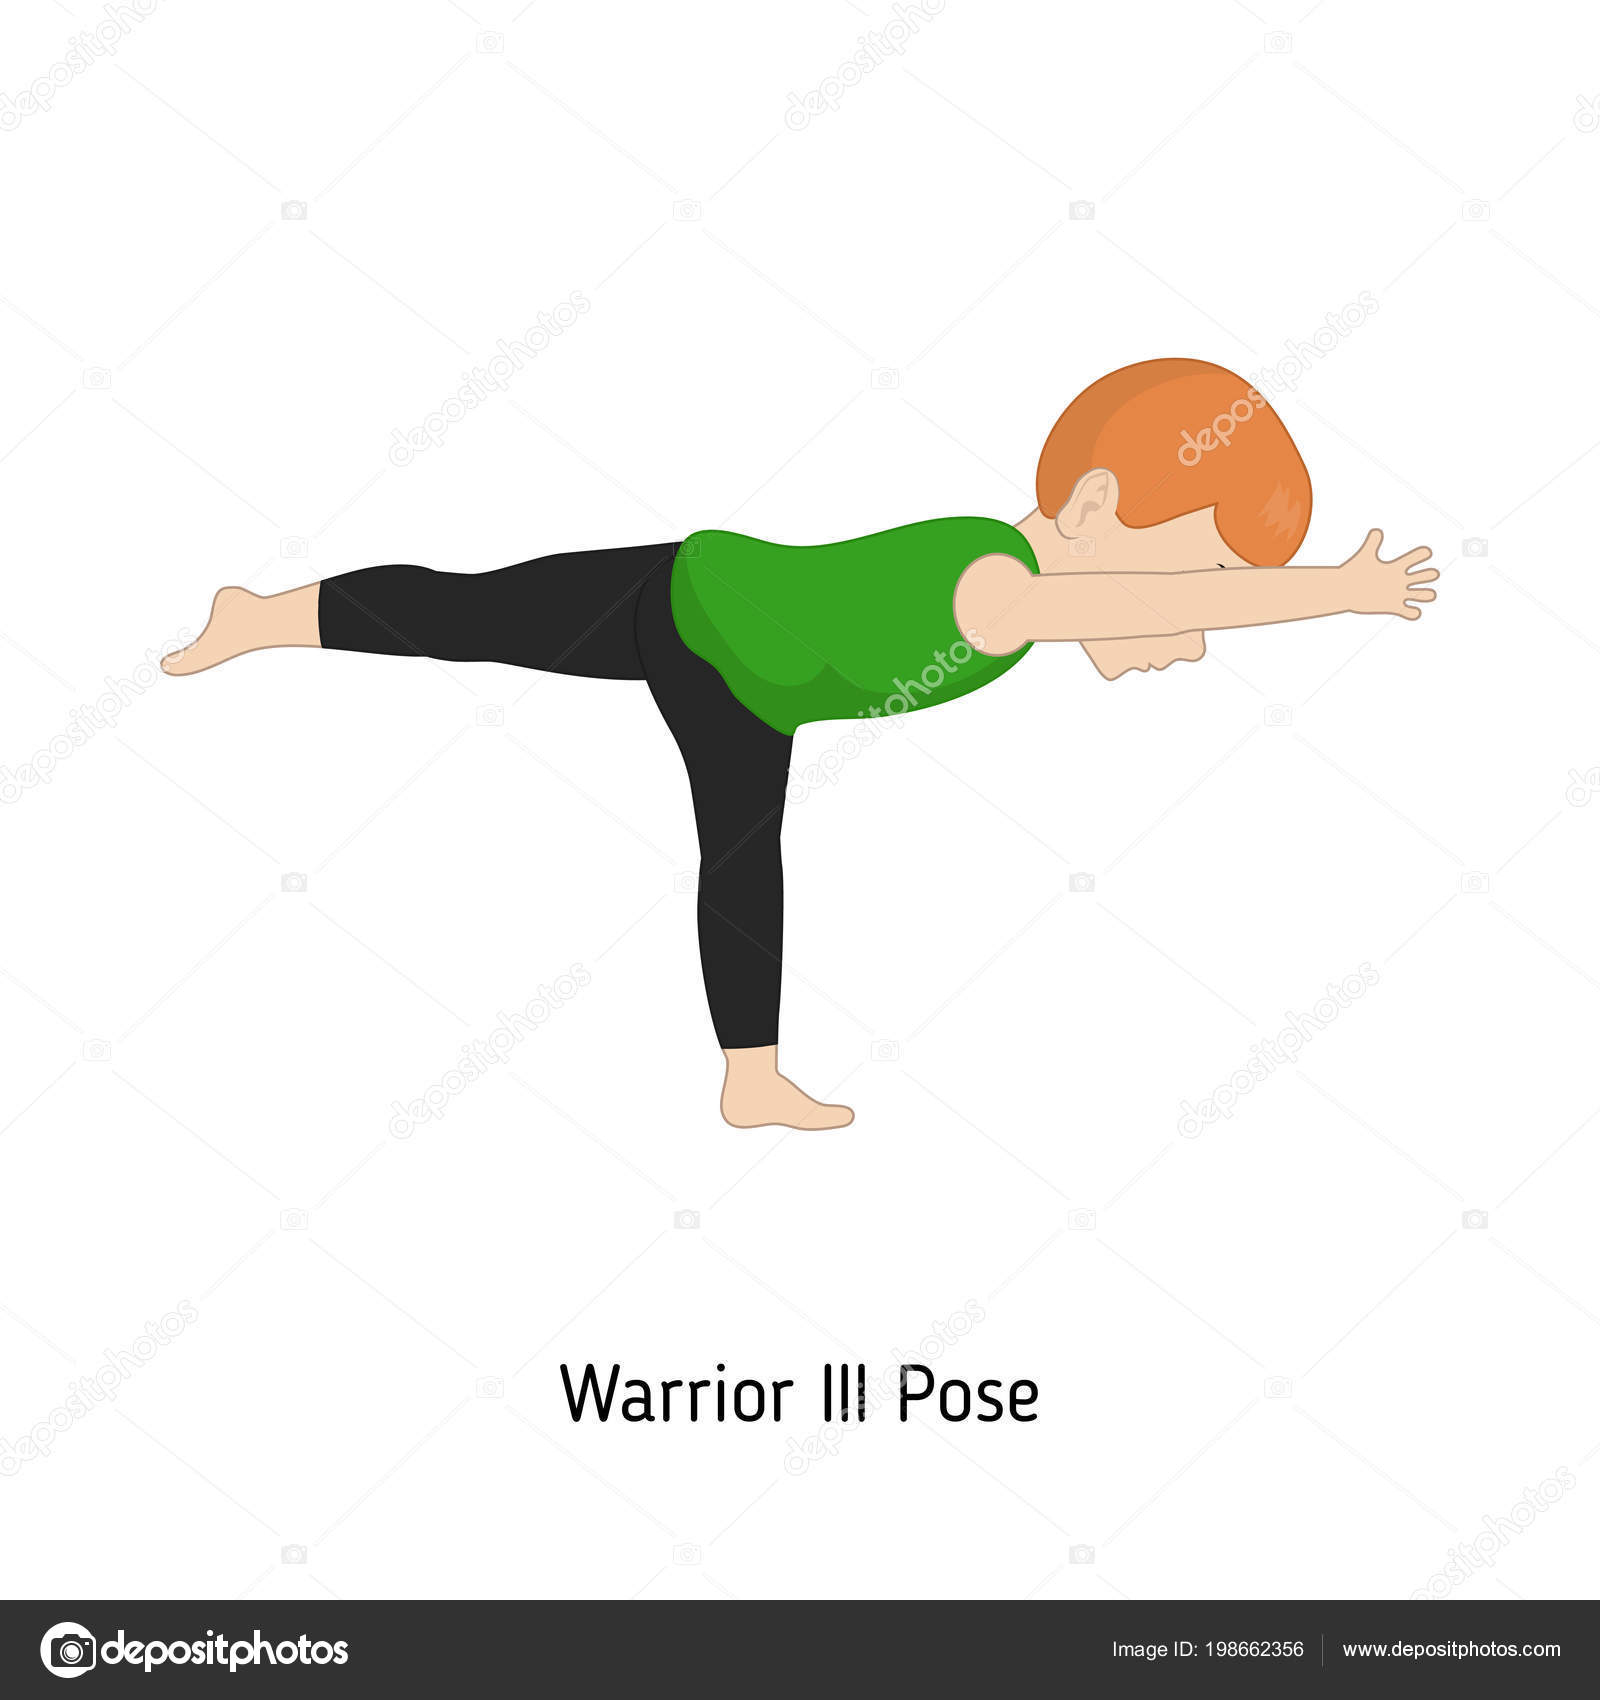 How to do Warrior 2 Pose | ClassPass